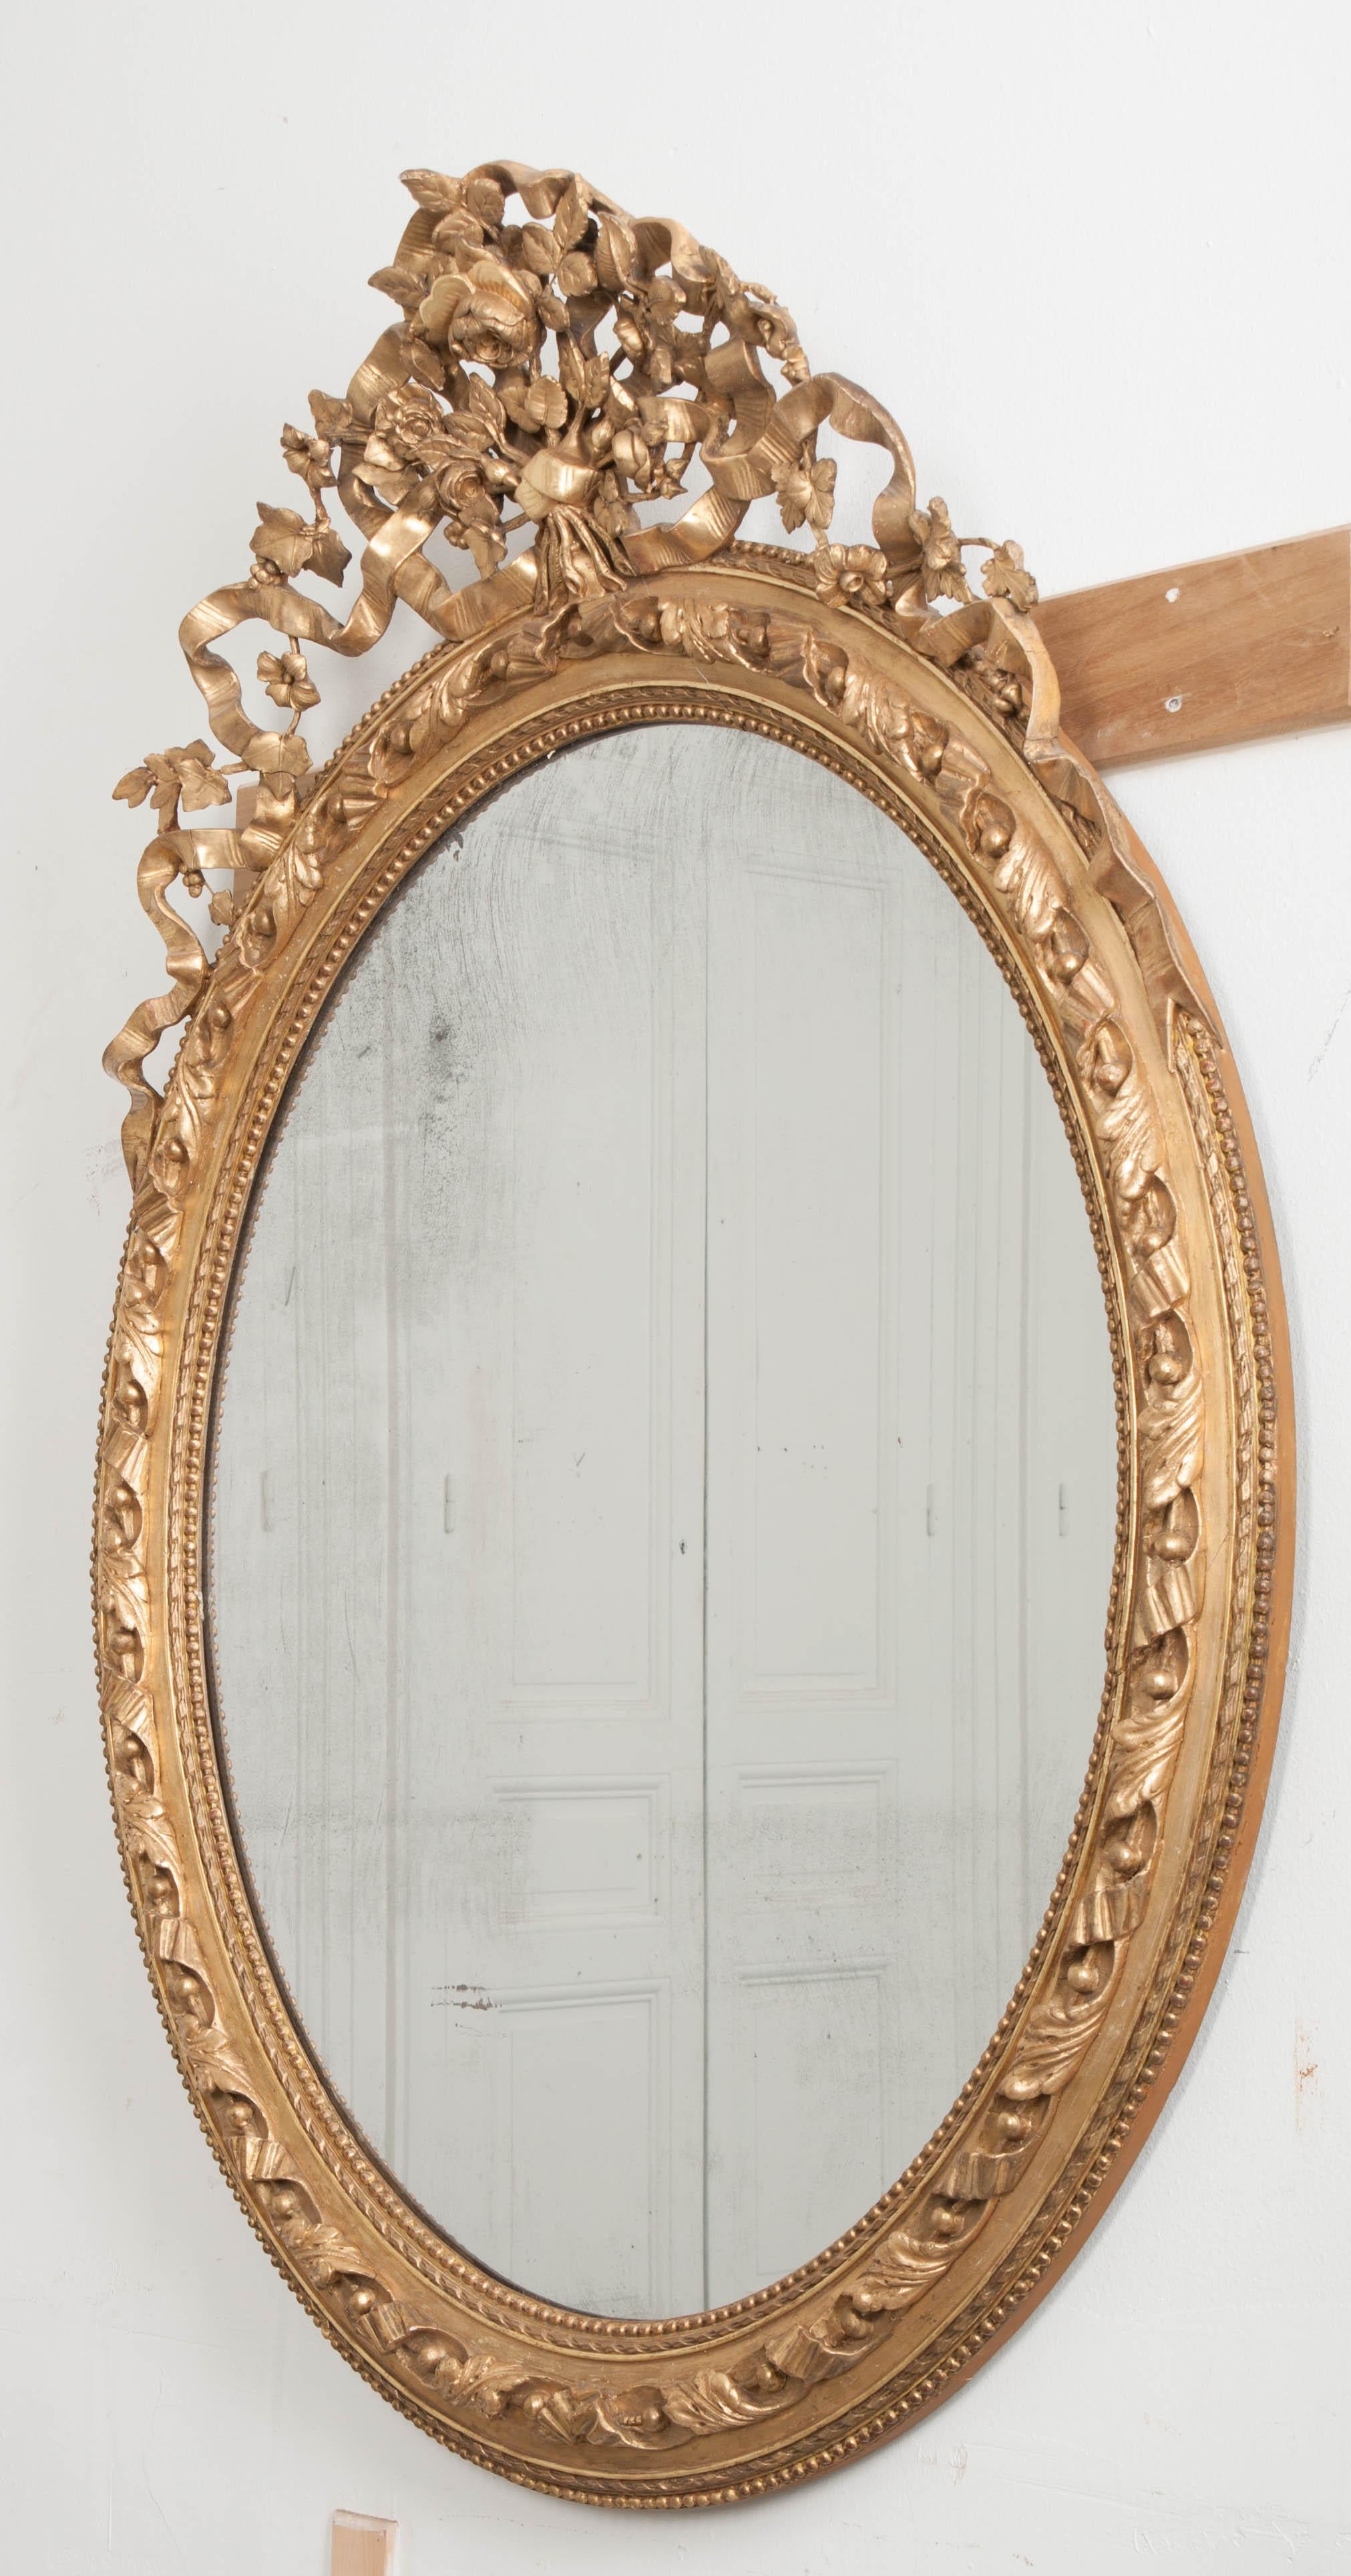 Fantaisiste et amusant, ce miroir ovale doré de style Louis XVI français du XIXe siècle présente des détails complexes et sculptés de haut en bas. Un bouquet sculpté de fleurs et de vignes couronne le miroir brillant, avec des détails de rubans